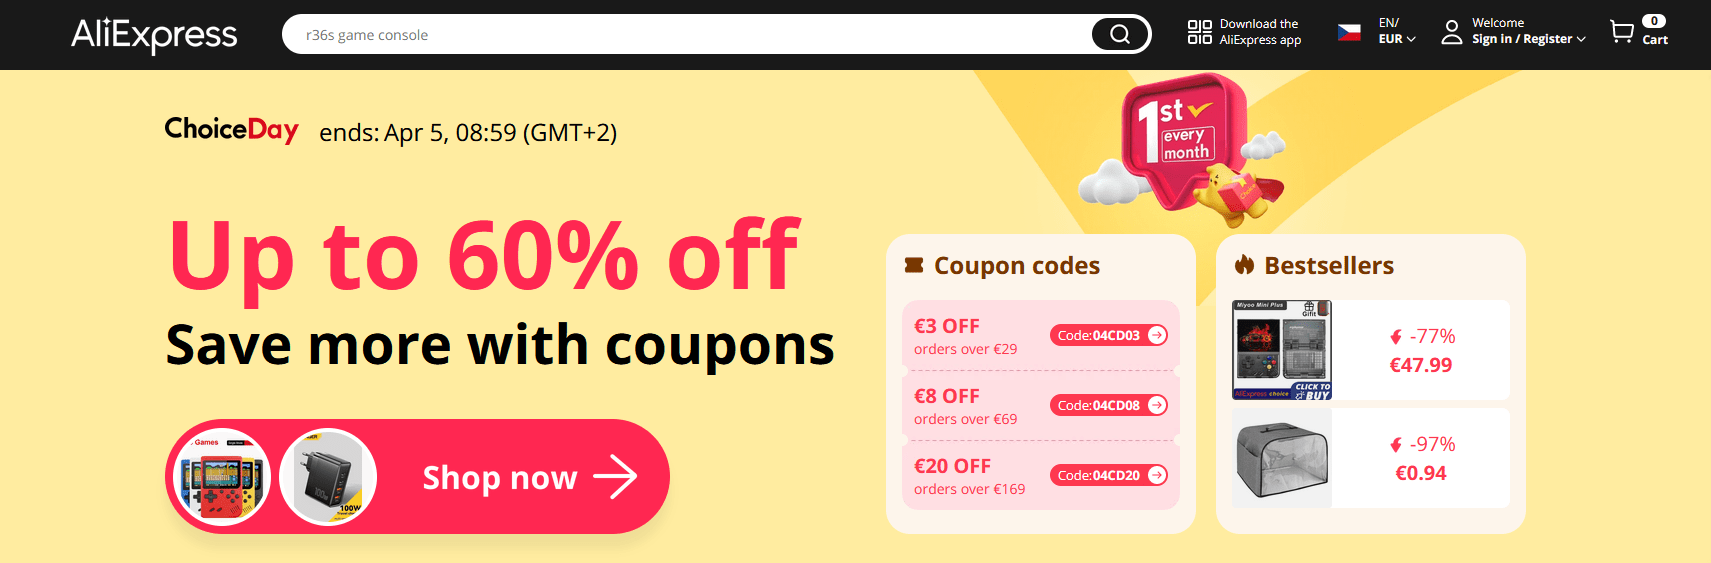 [Распродажа] ChoiceDay со скидками до 60%